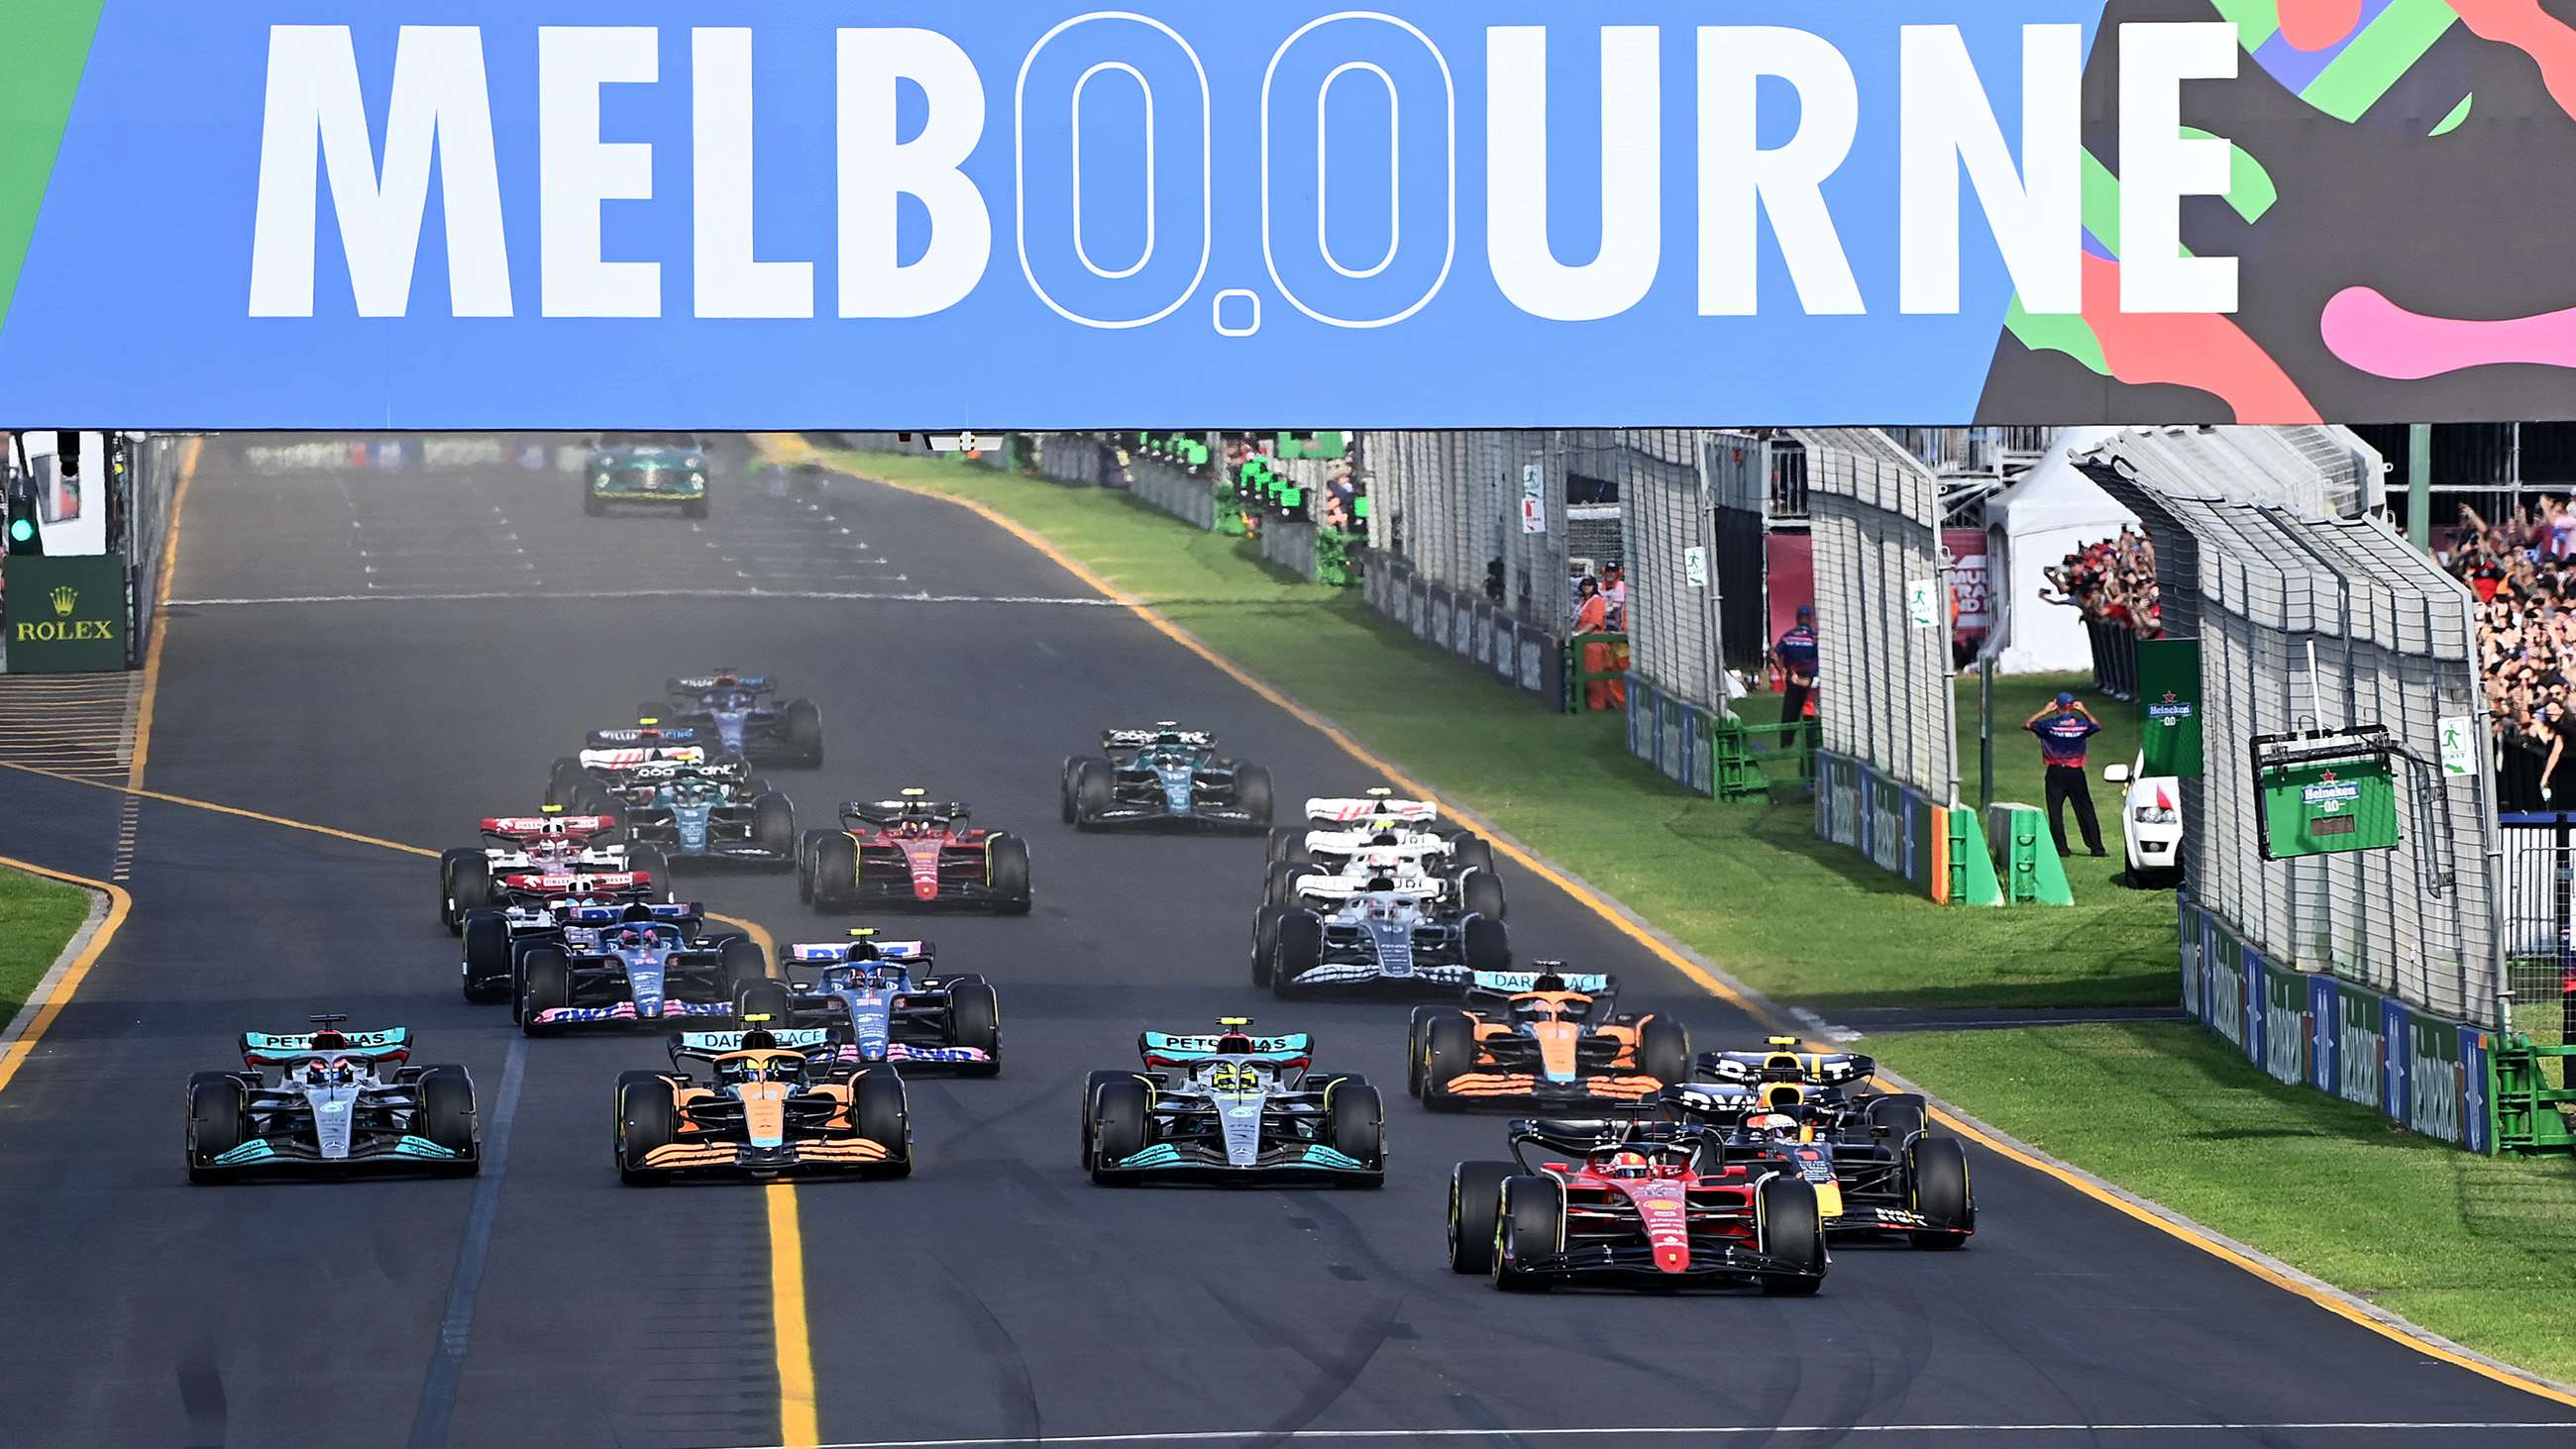 Australian F1 Grand Prix renewed until 2035 GRR